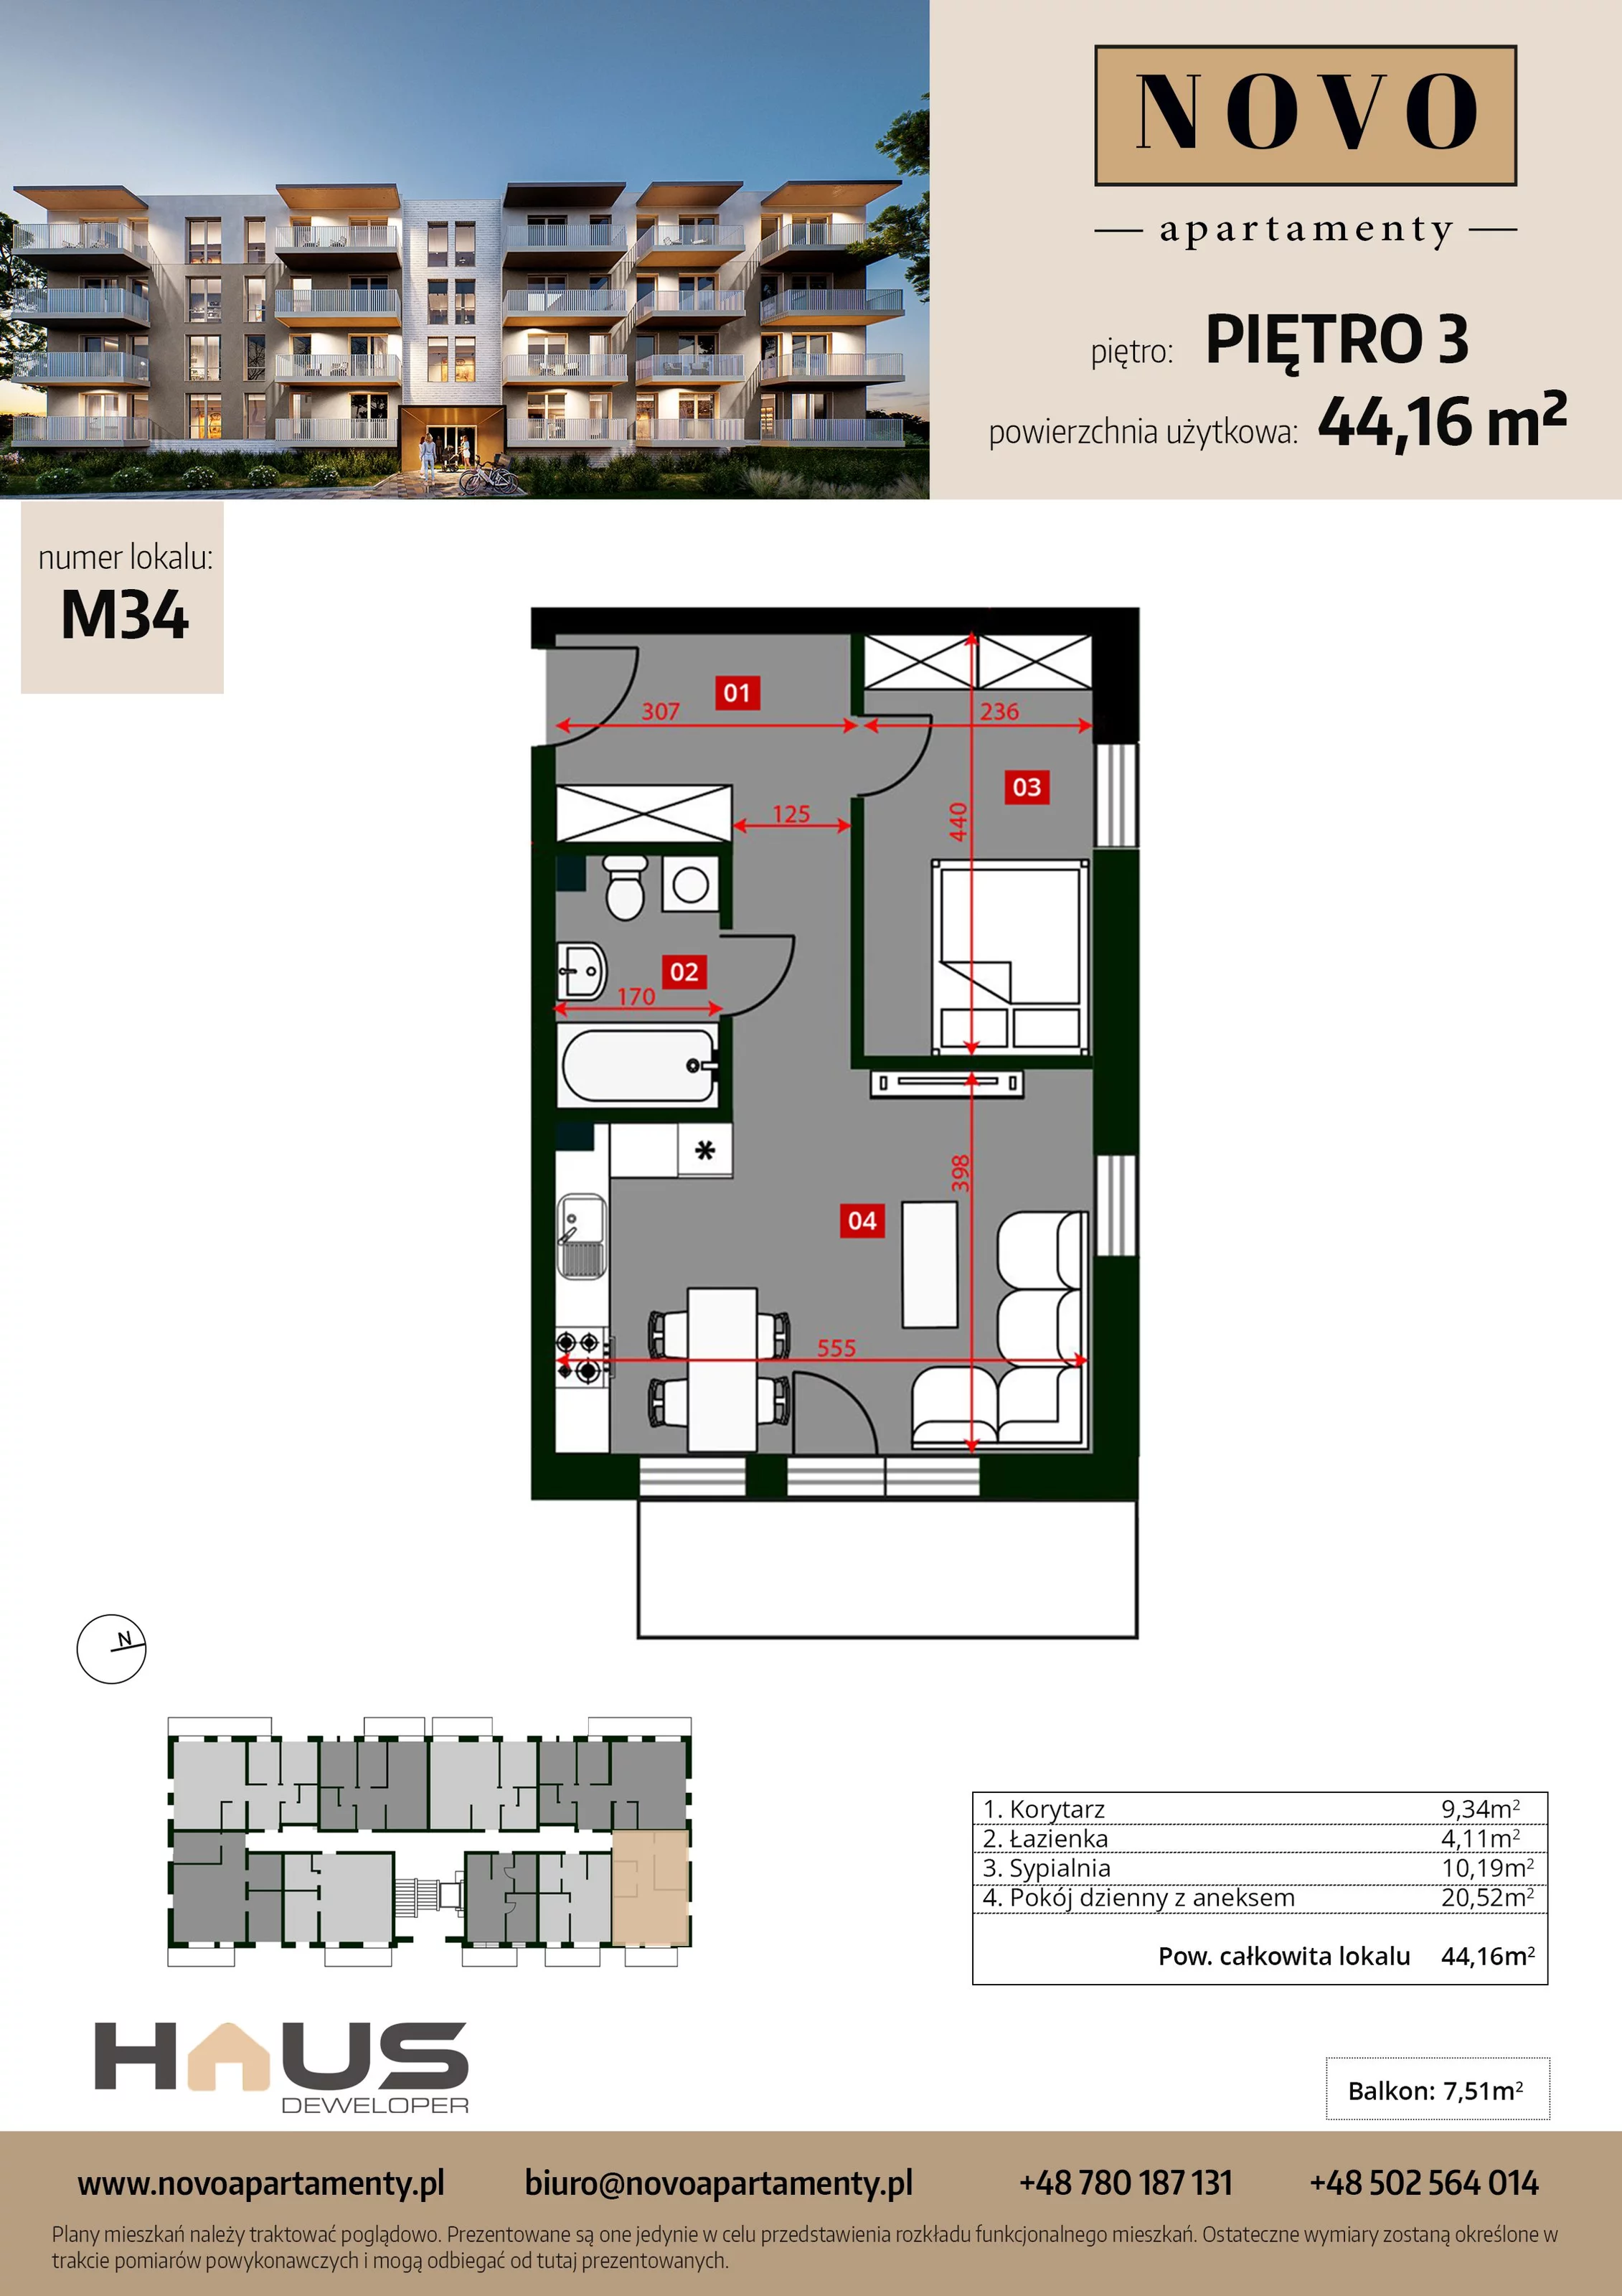 Mieszkanie 44,16 m², piętro 3, oferta nr M34, Apartamenty NOVO, Nysa, ul. Franciszkańska